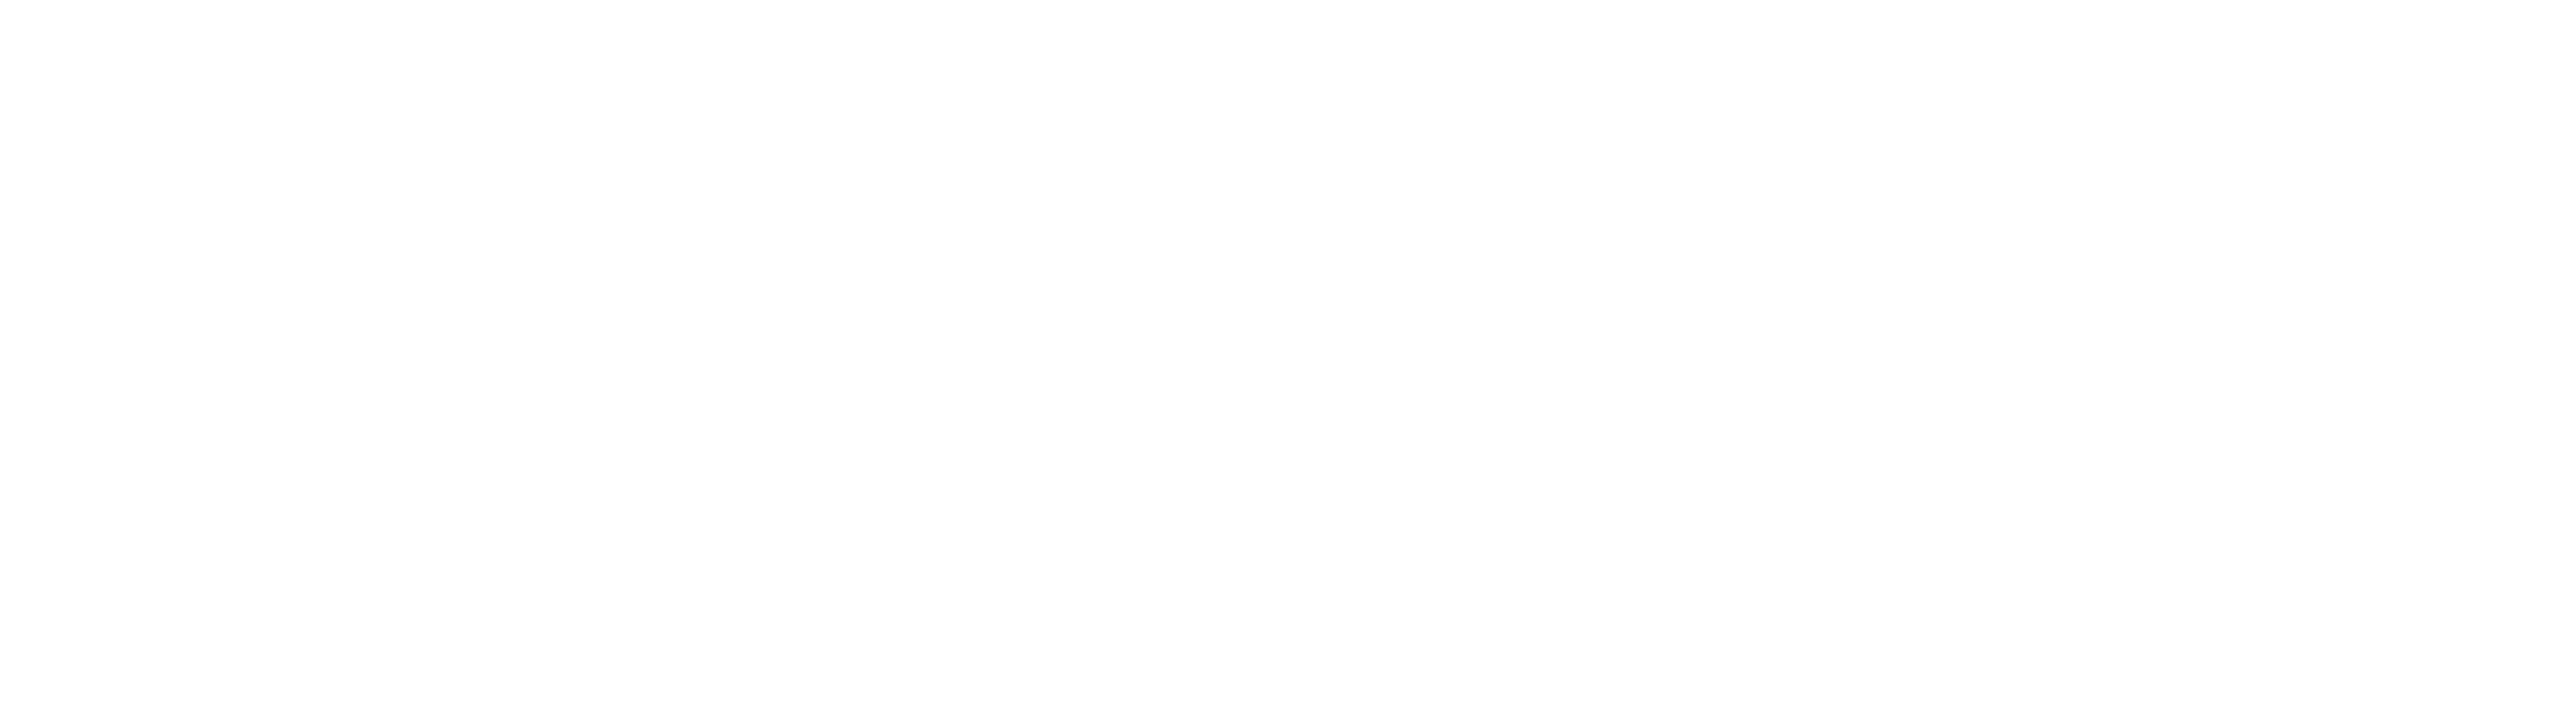 Egala Zorg logo